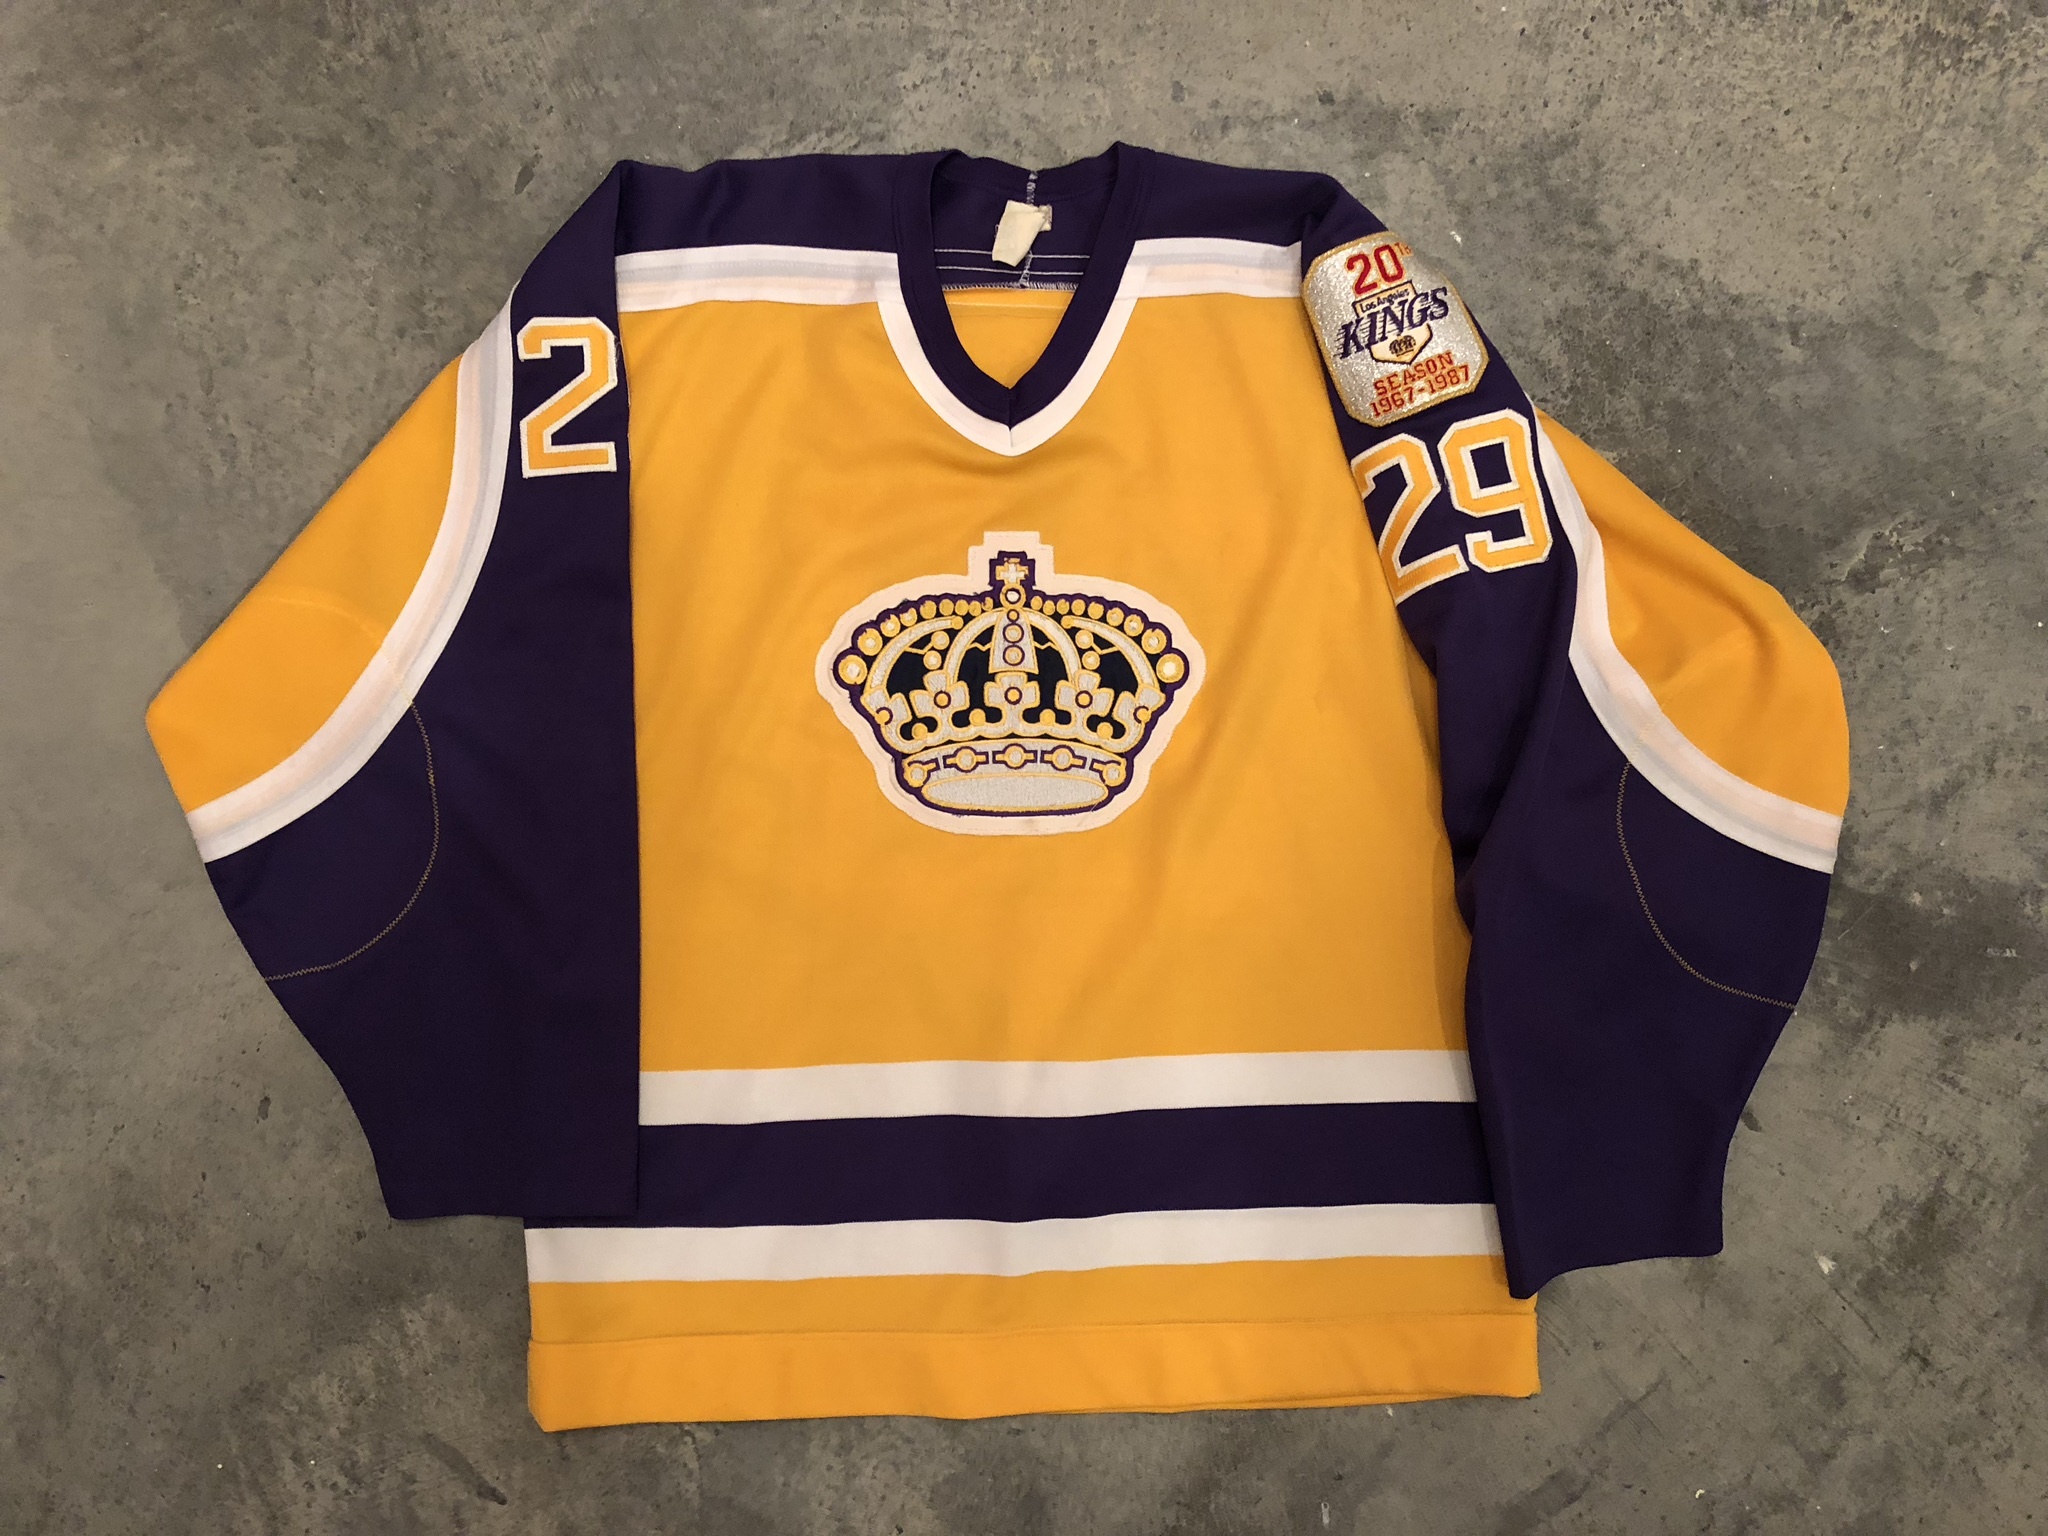 la kings game worn jerseys